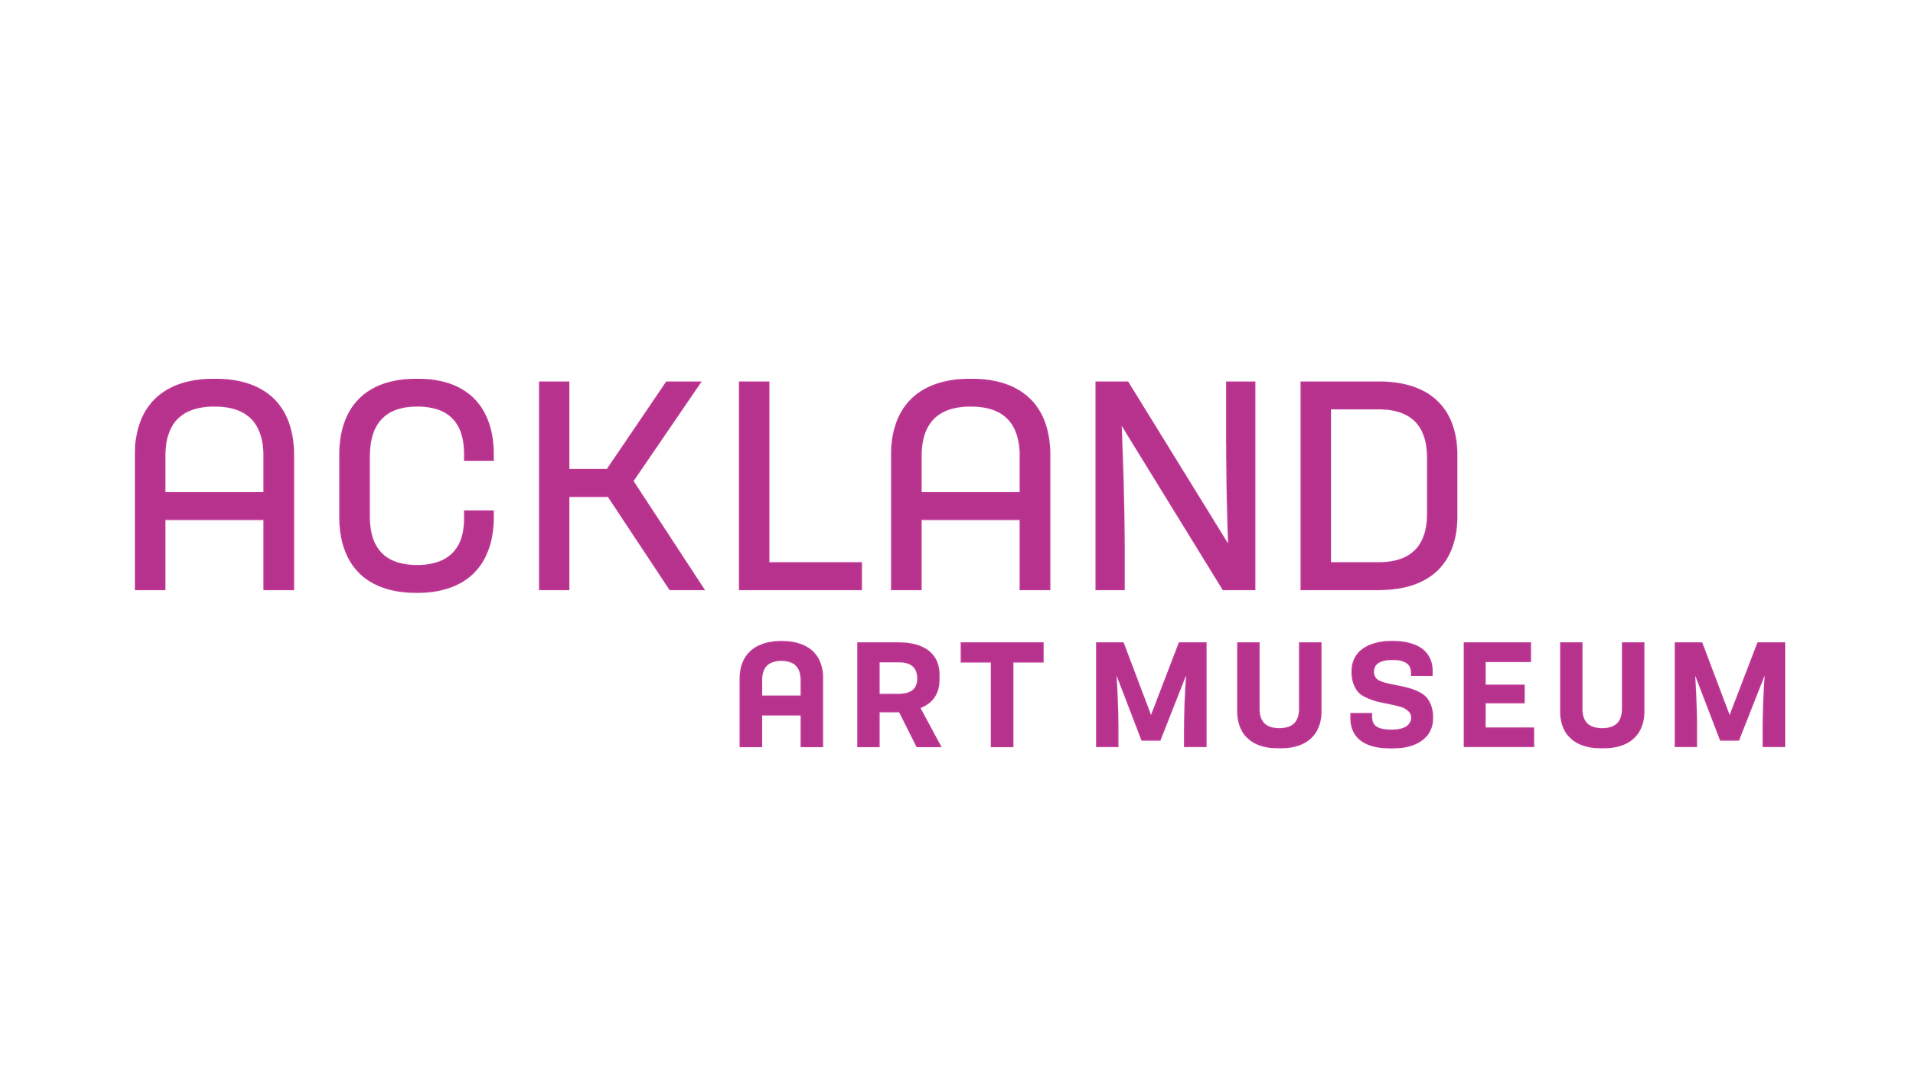 Ackland Art Museum logo